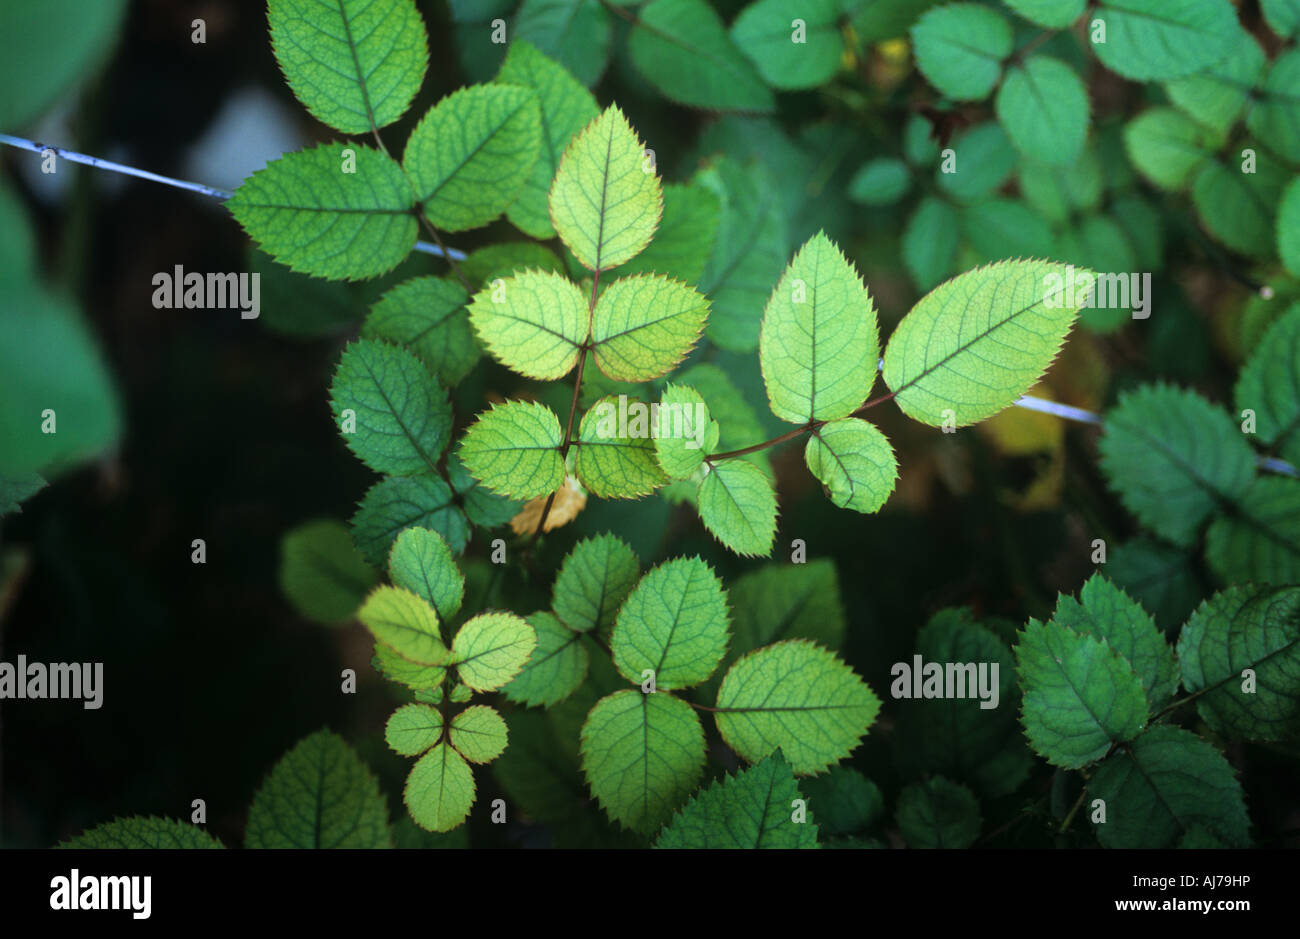 Stickstoff-Mangel Chlorosen auf Gewächshaus gewachsen rose Pflanze Blätter  Stockfotografie - Alamy